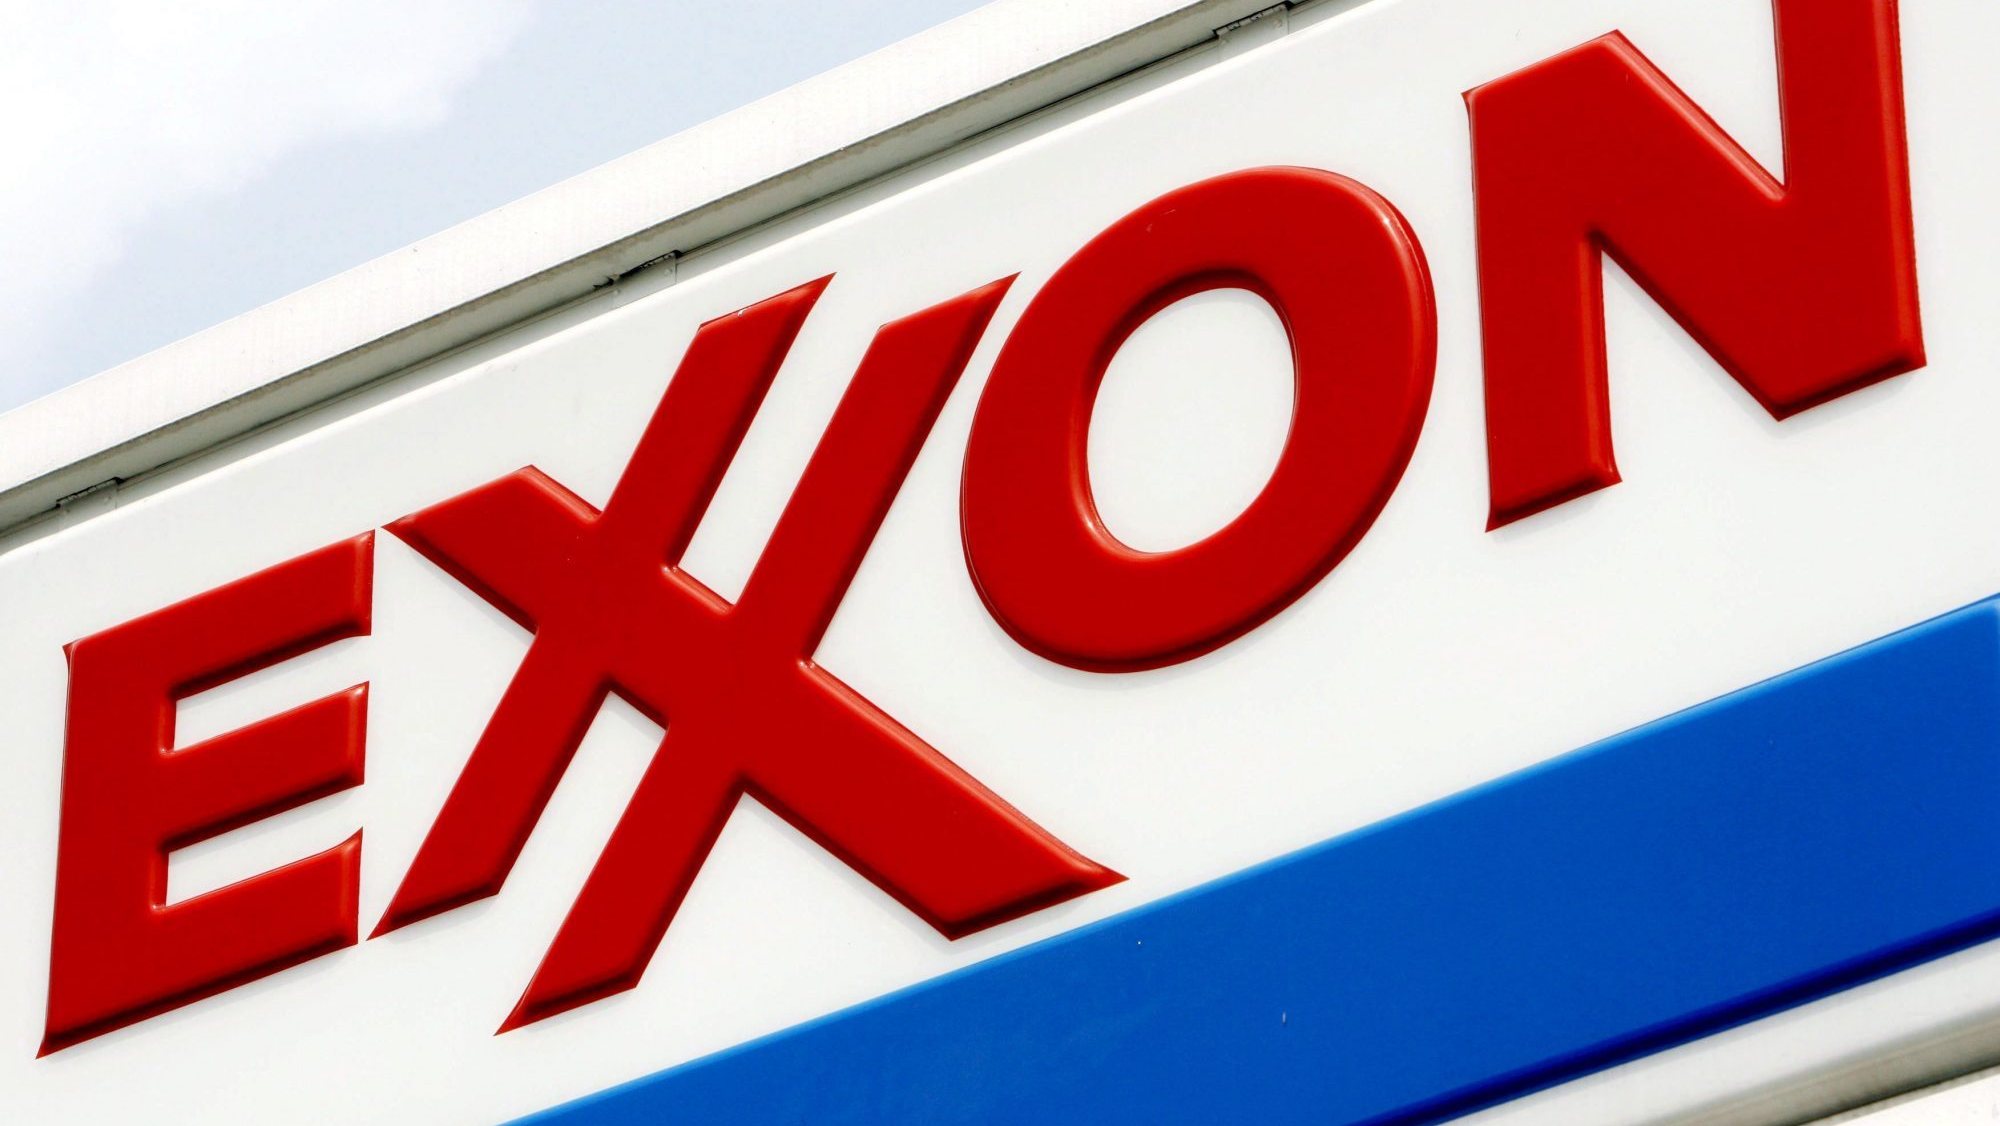 ExxonMobil - imagem genérica do logotipo